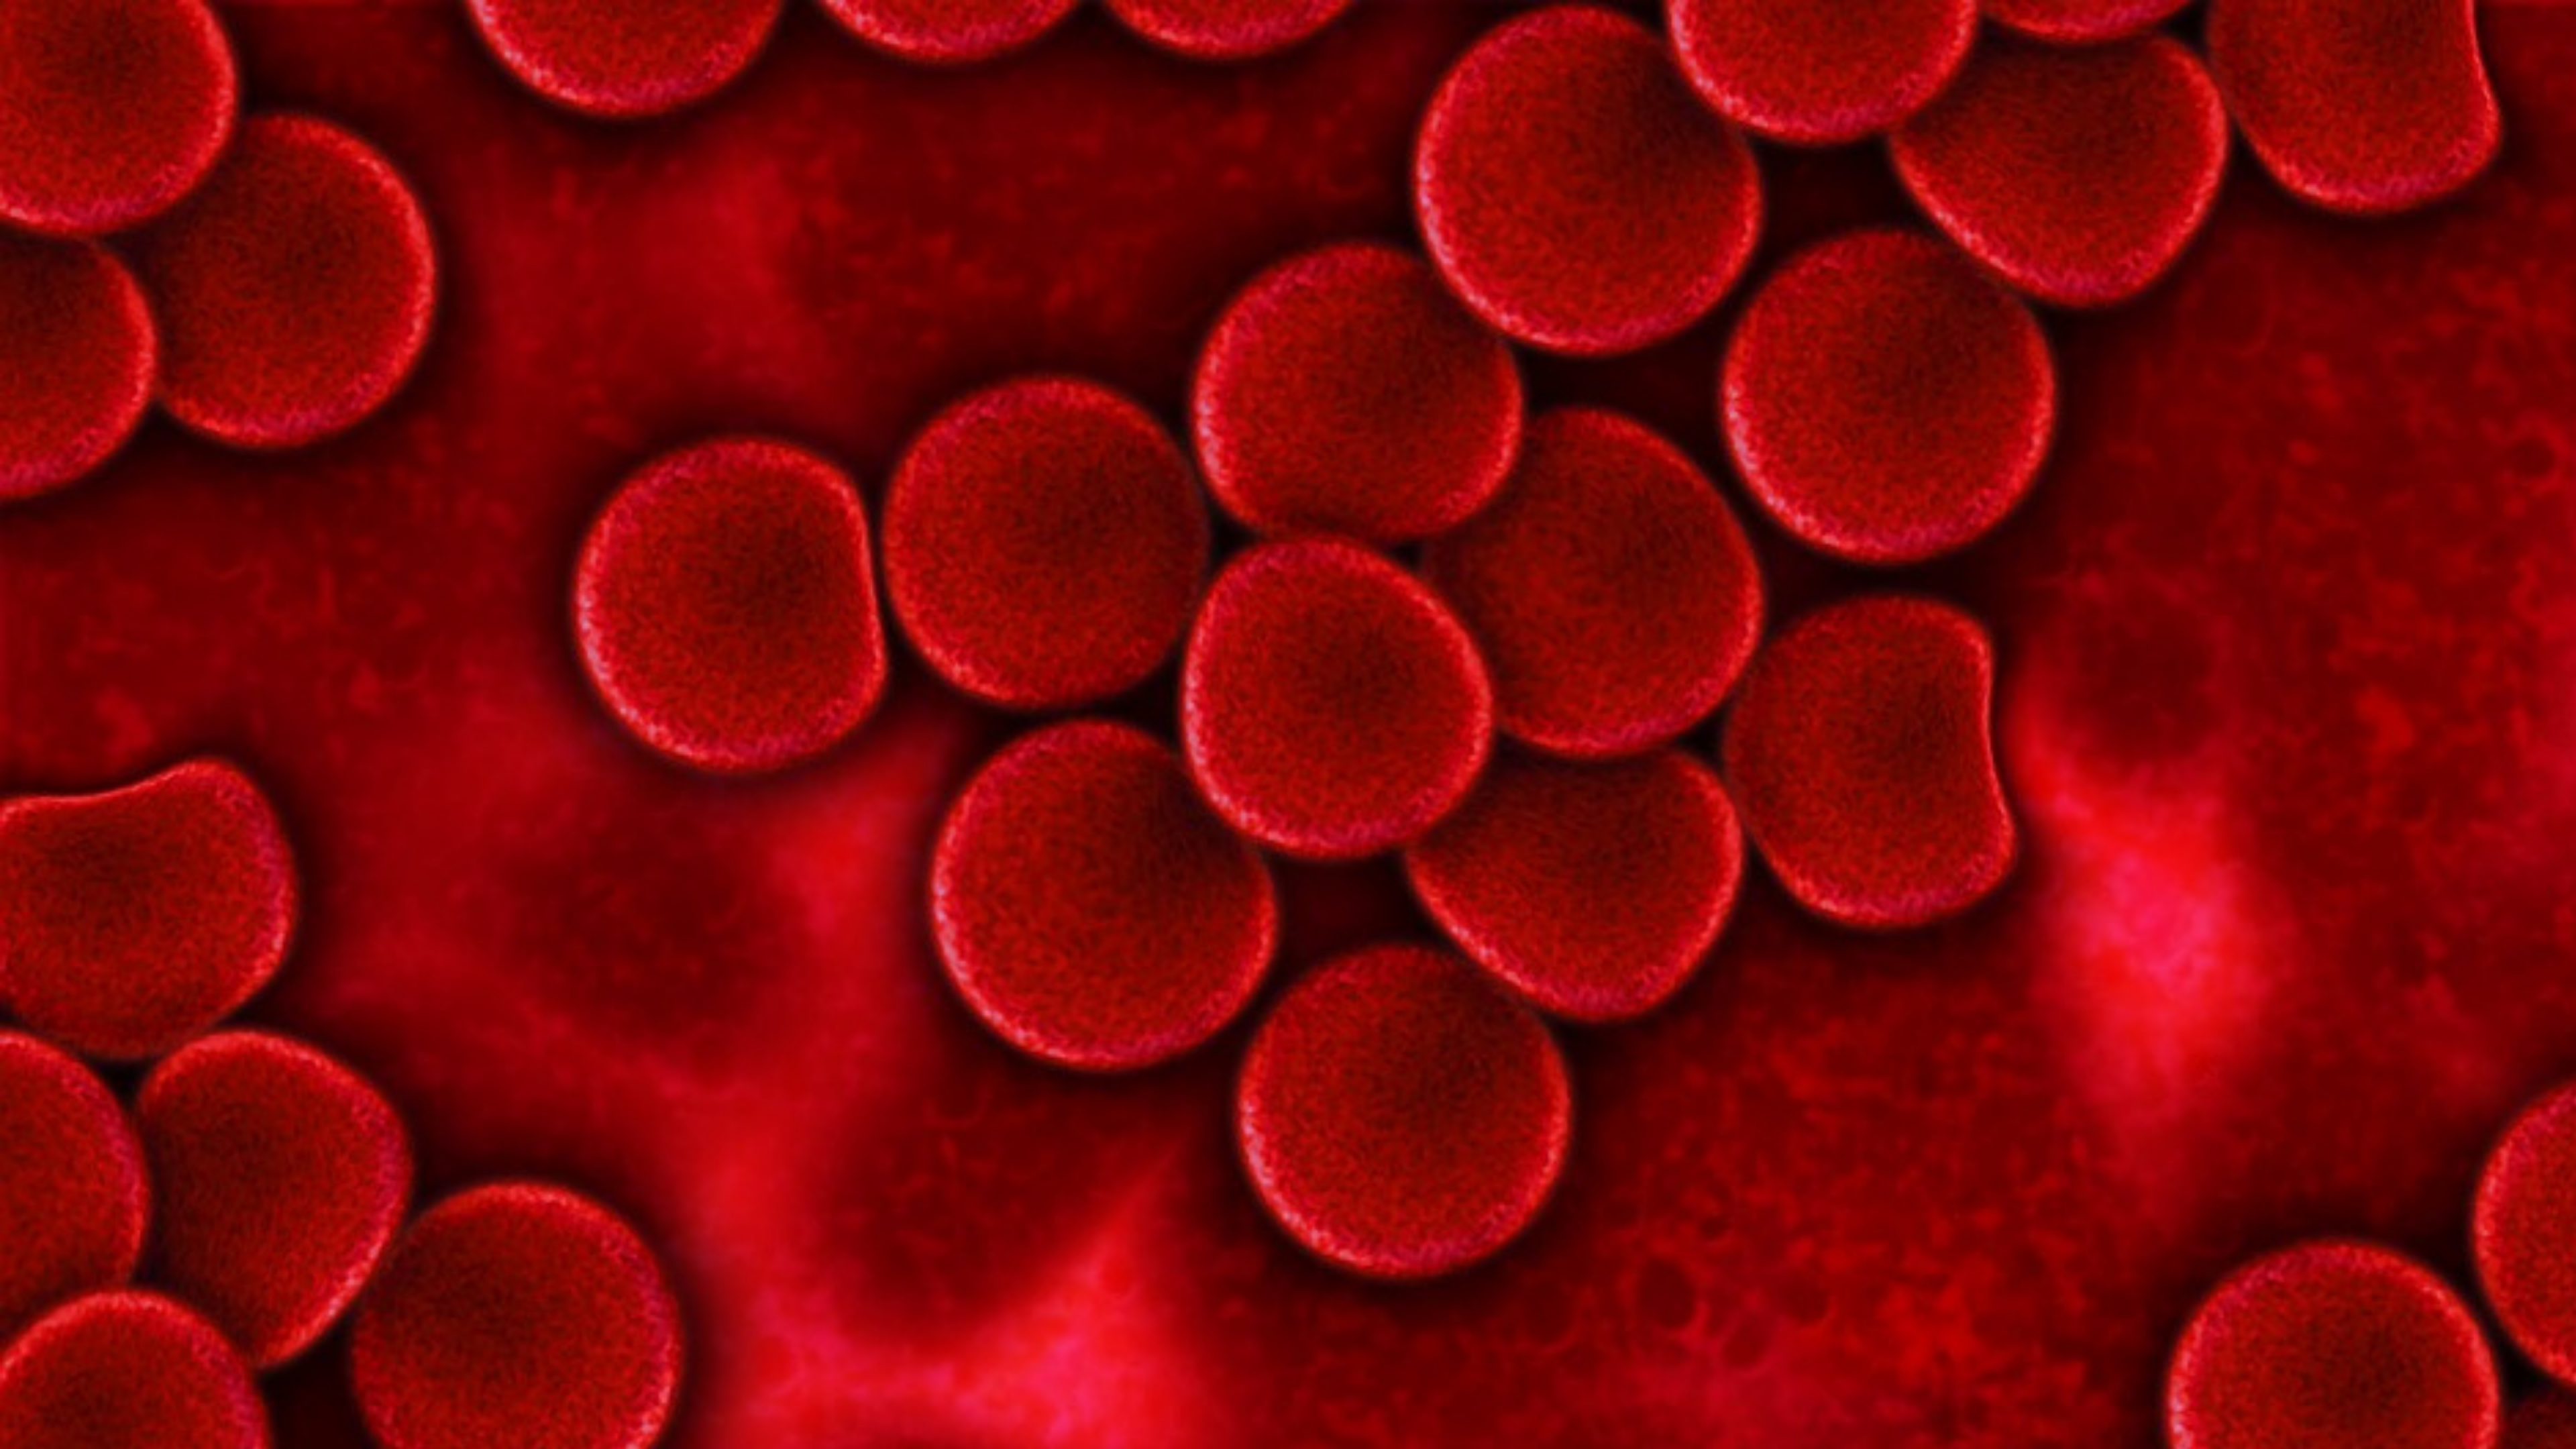 Platelet Rich Plasma oder auch PRP genannt ist ein Blut-Transplantations Produkt in welchem Plasma respektive die darin enthaltenen Thrombozyten zu verschiedenen regenerativen Zwecken verwendet werden kann. 

